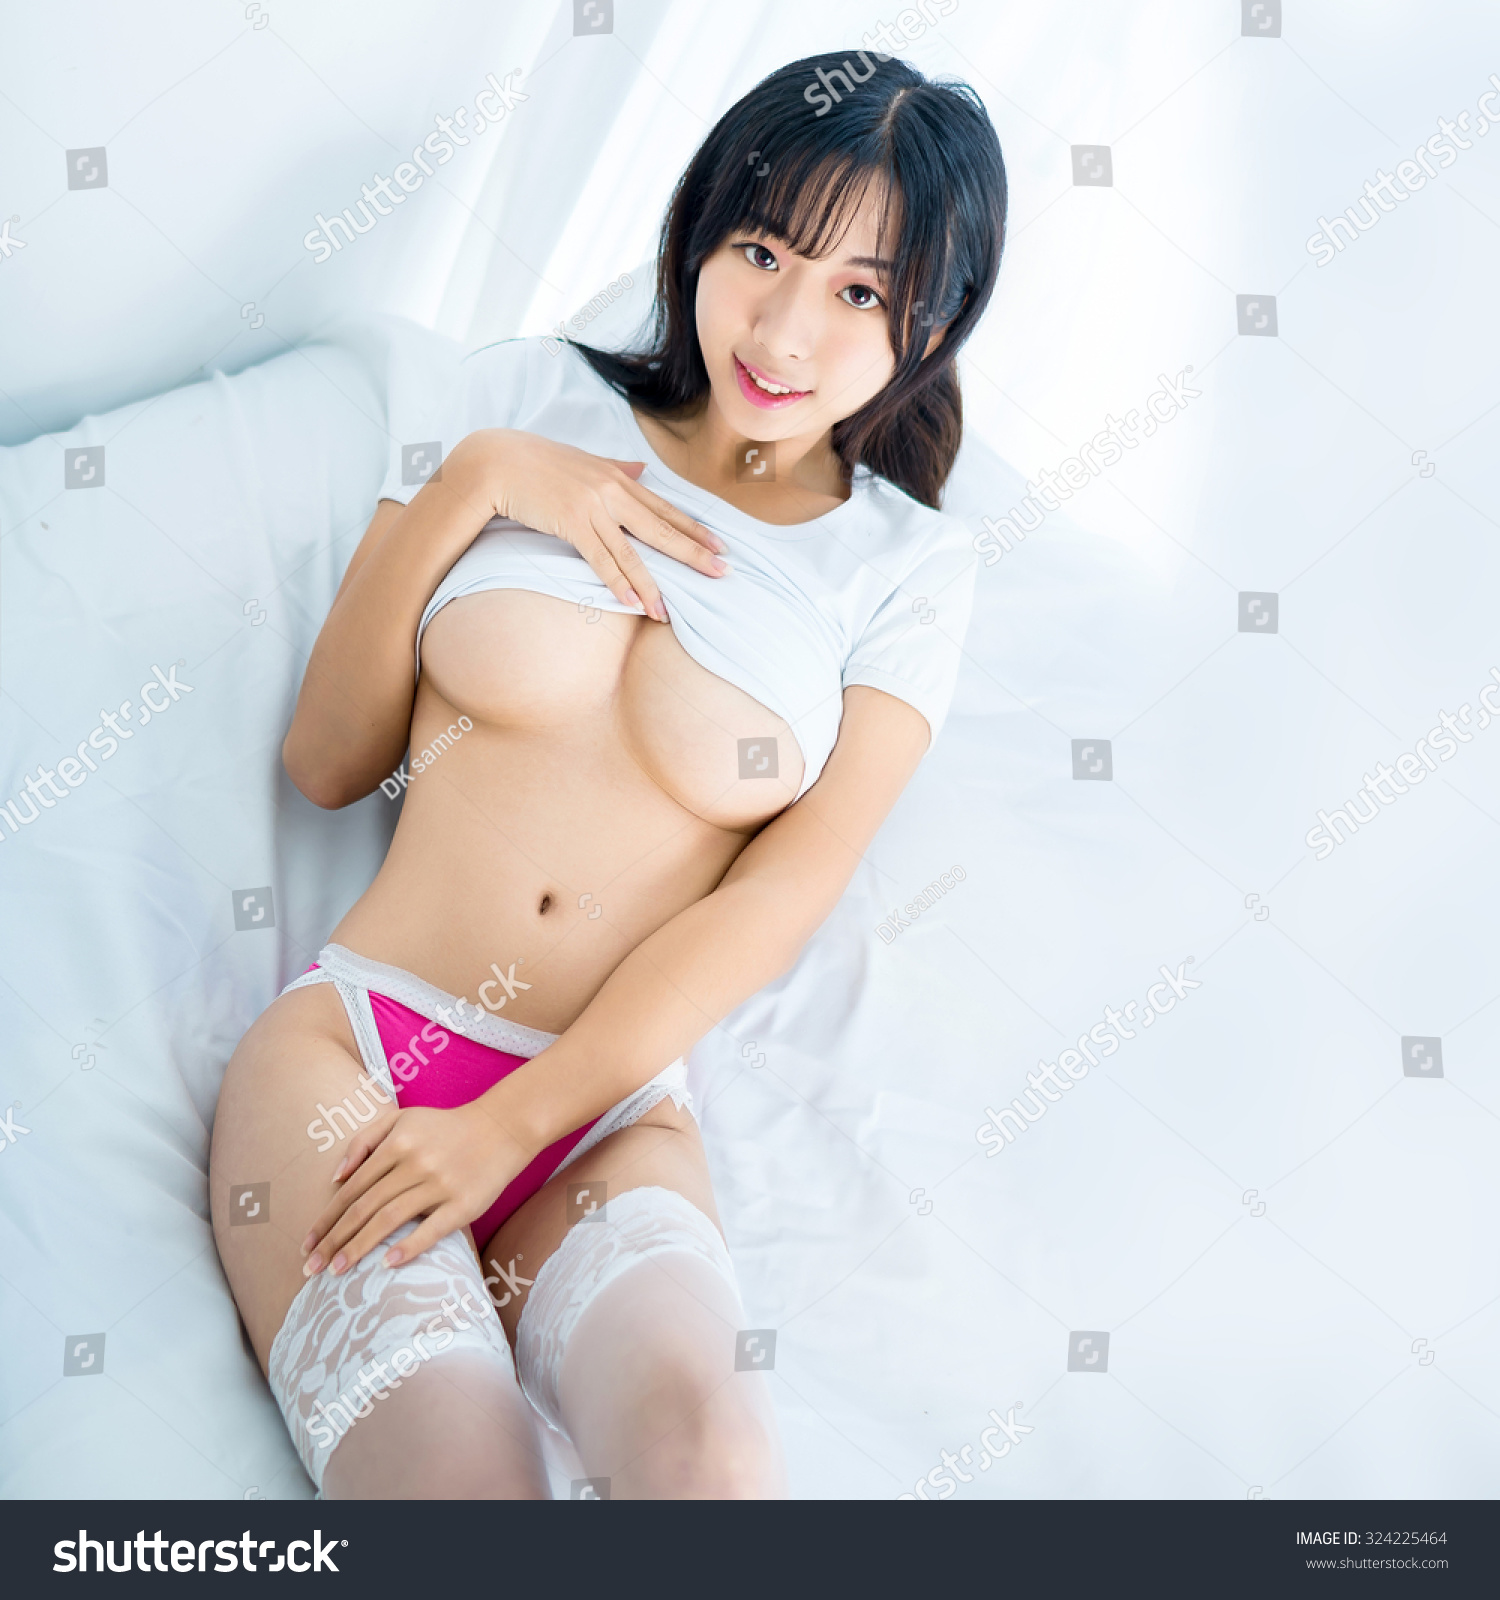 Japanese Nude Breast 74